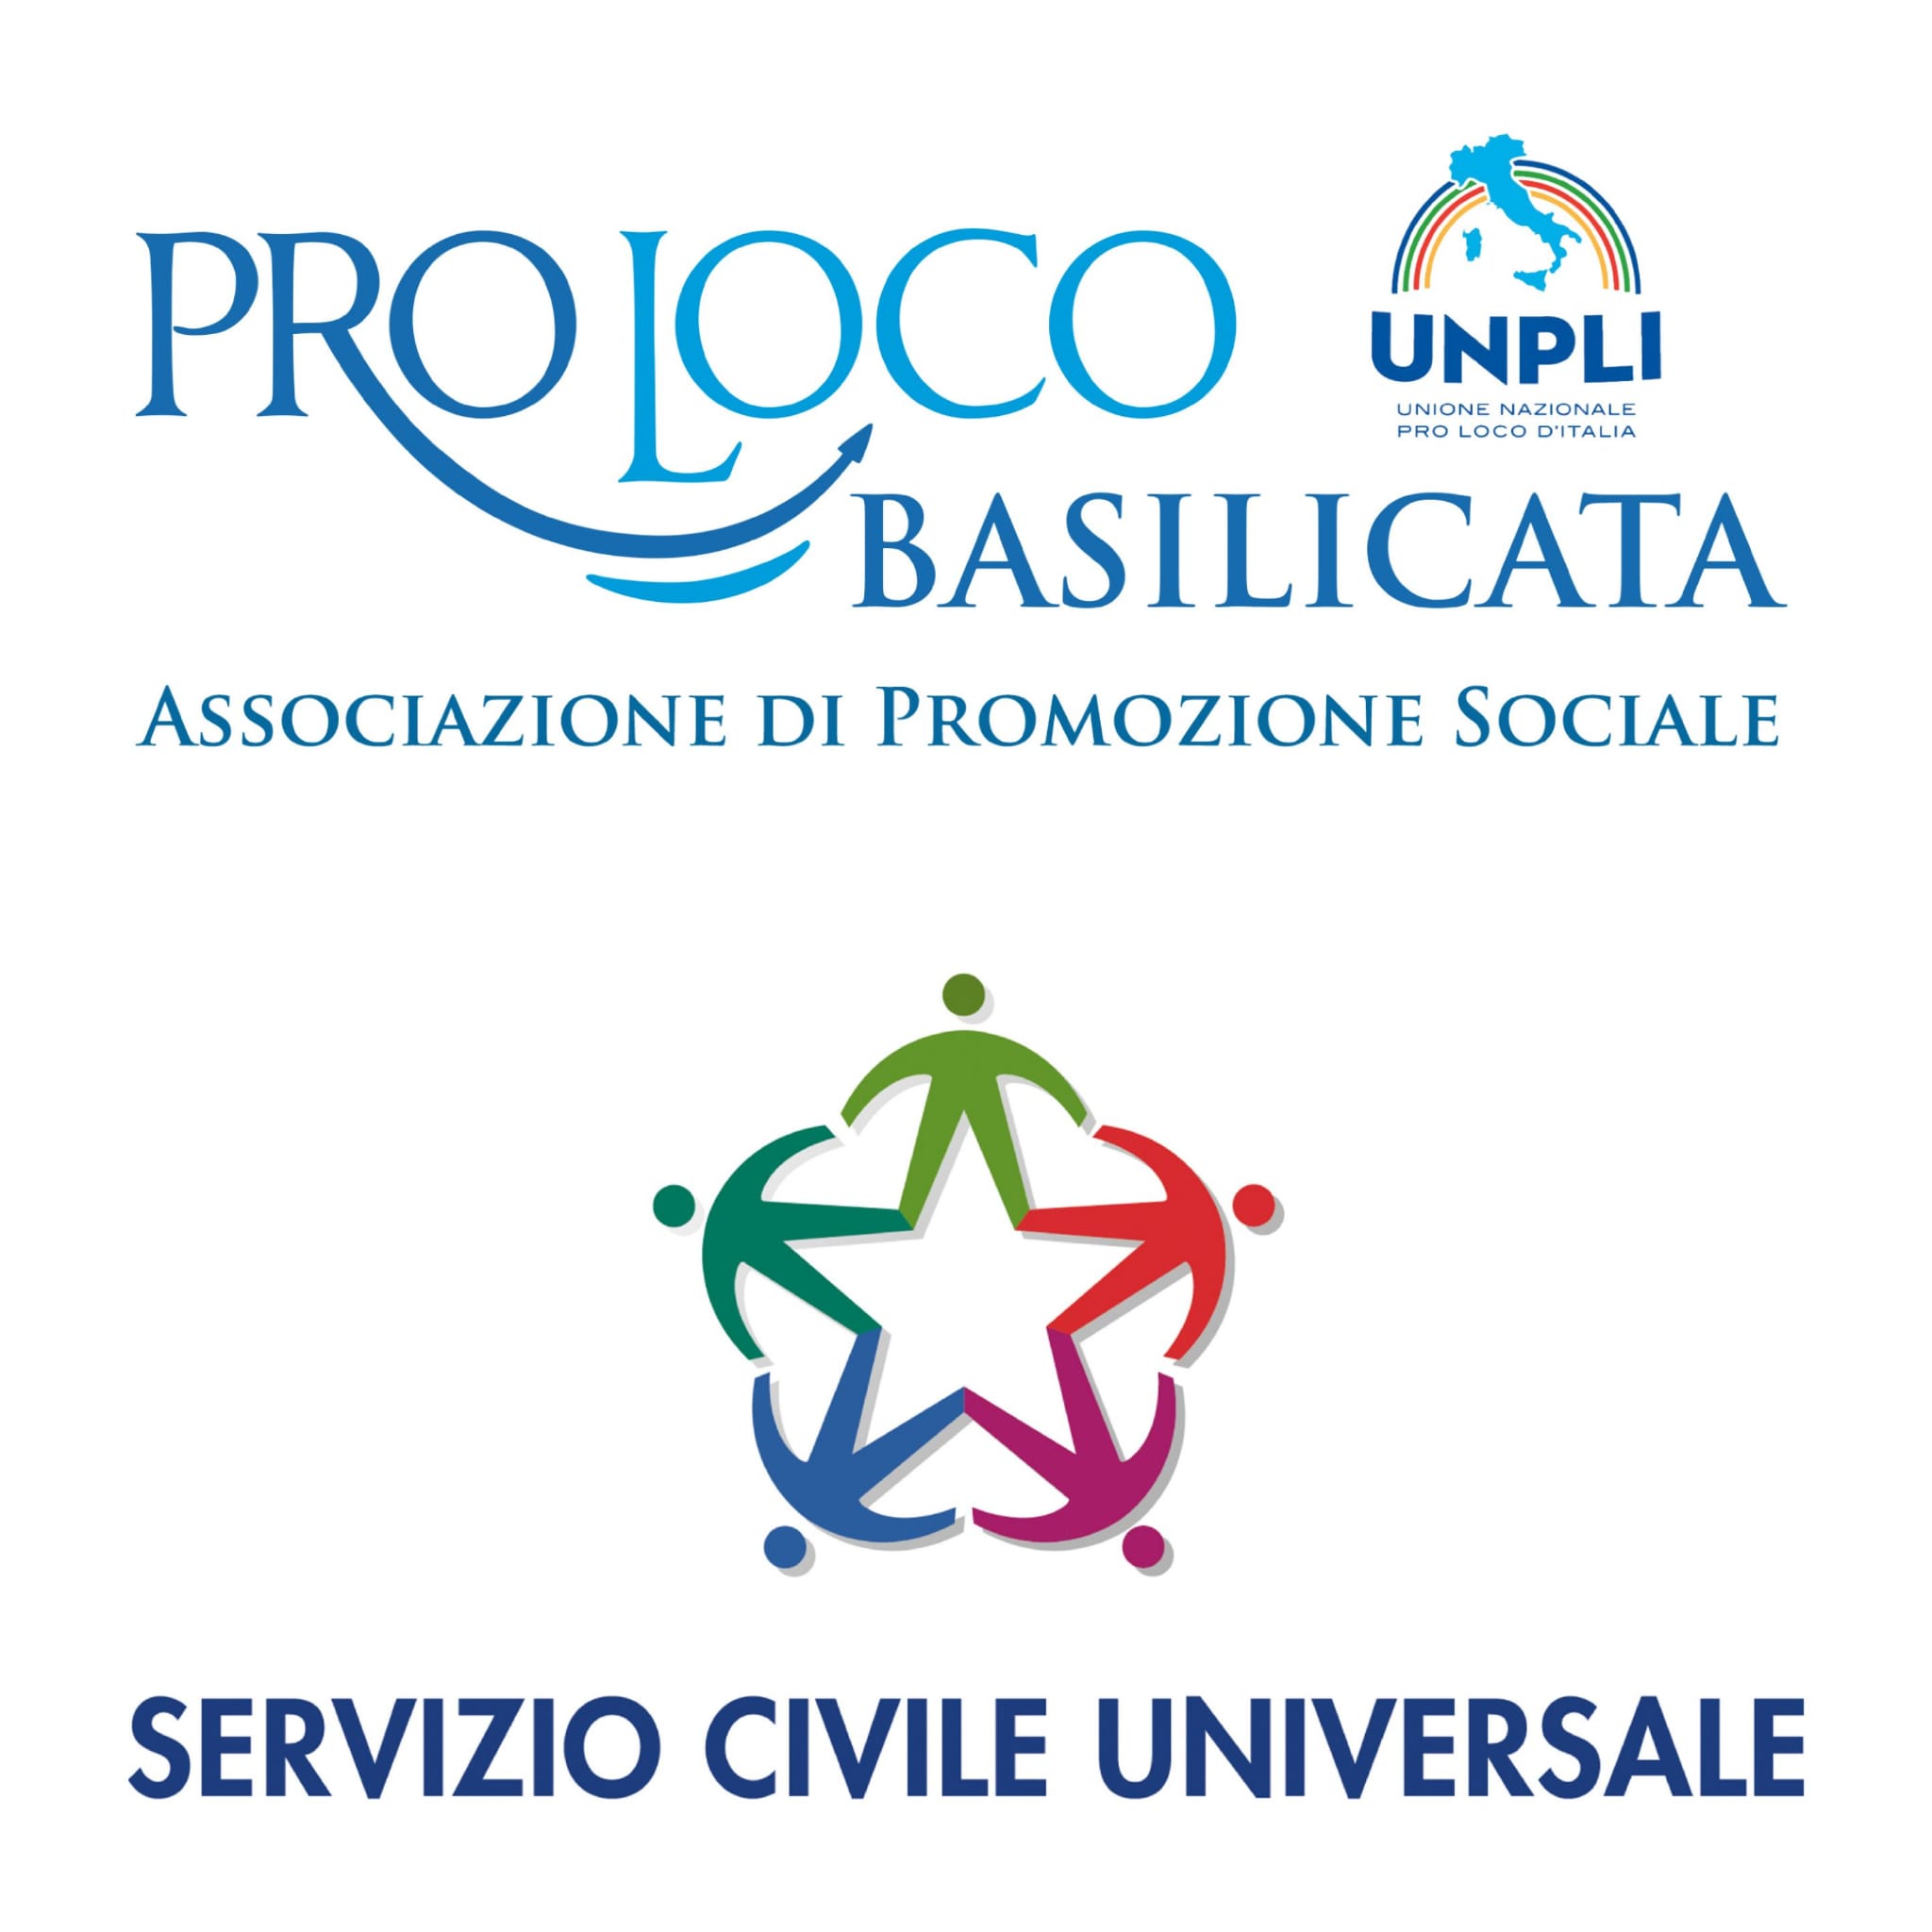 Al momento stai visualizzando Pubblicato il Bando per la selezione di Operatori Volontari in progetti di Servizio civile universale nelle Pro Loco Unpli Basilicata